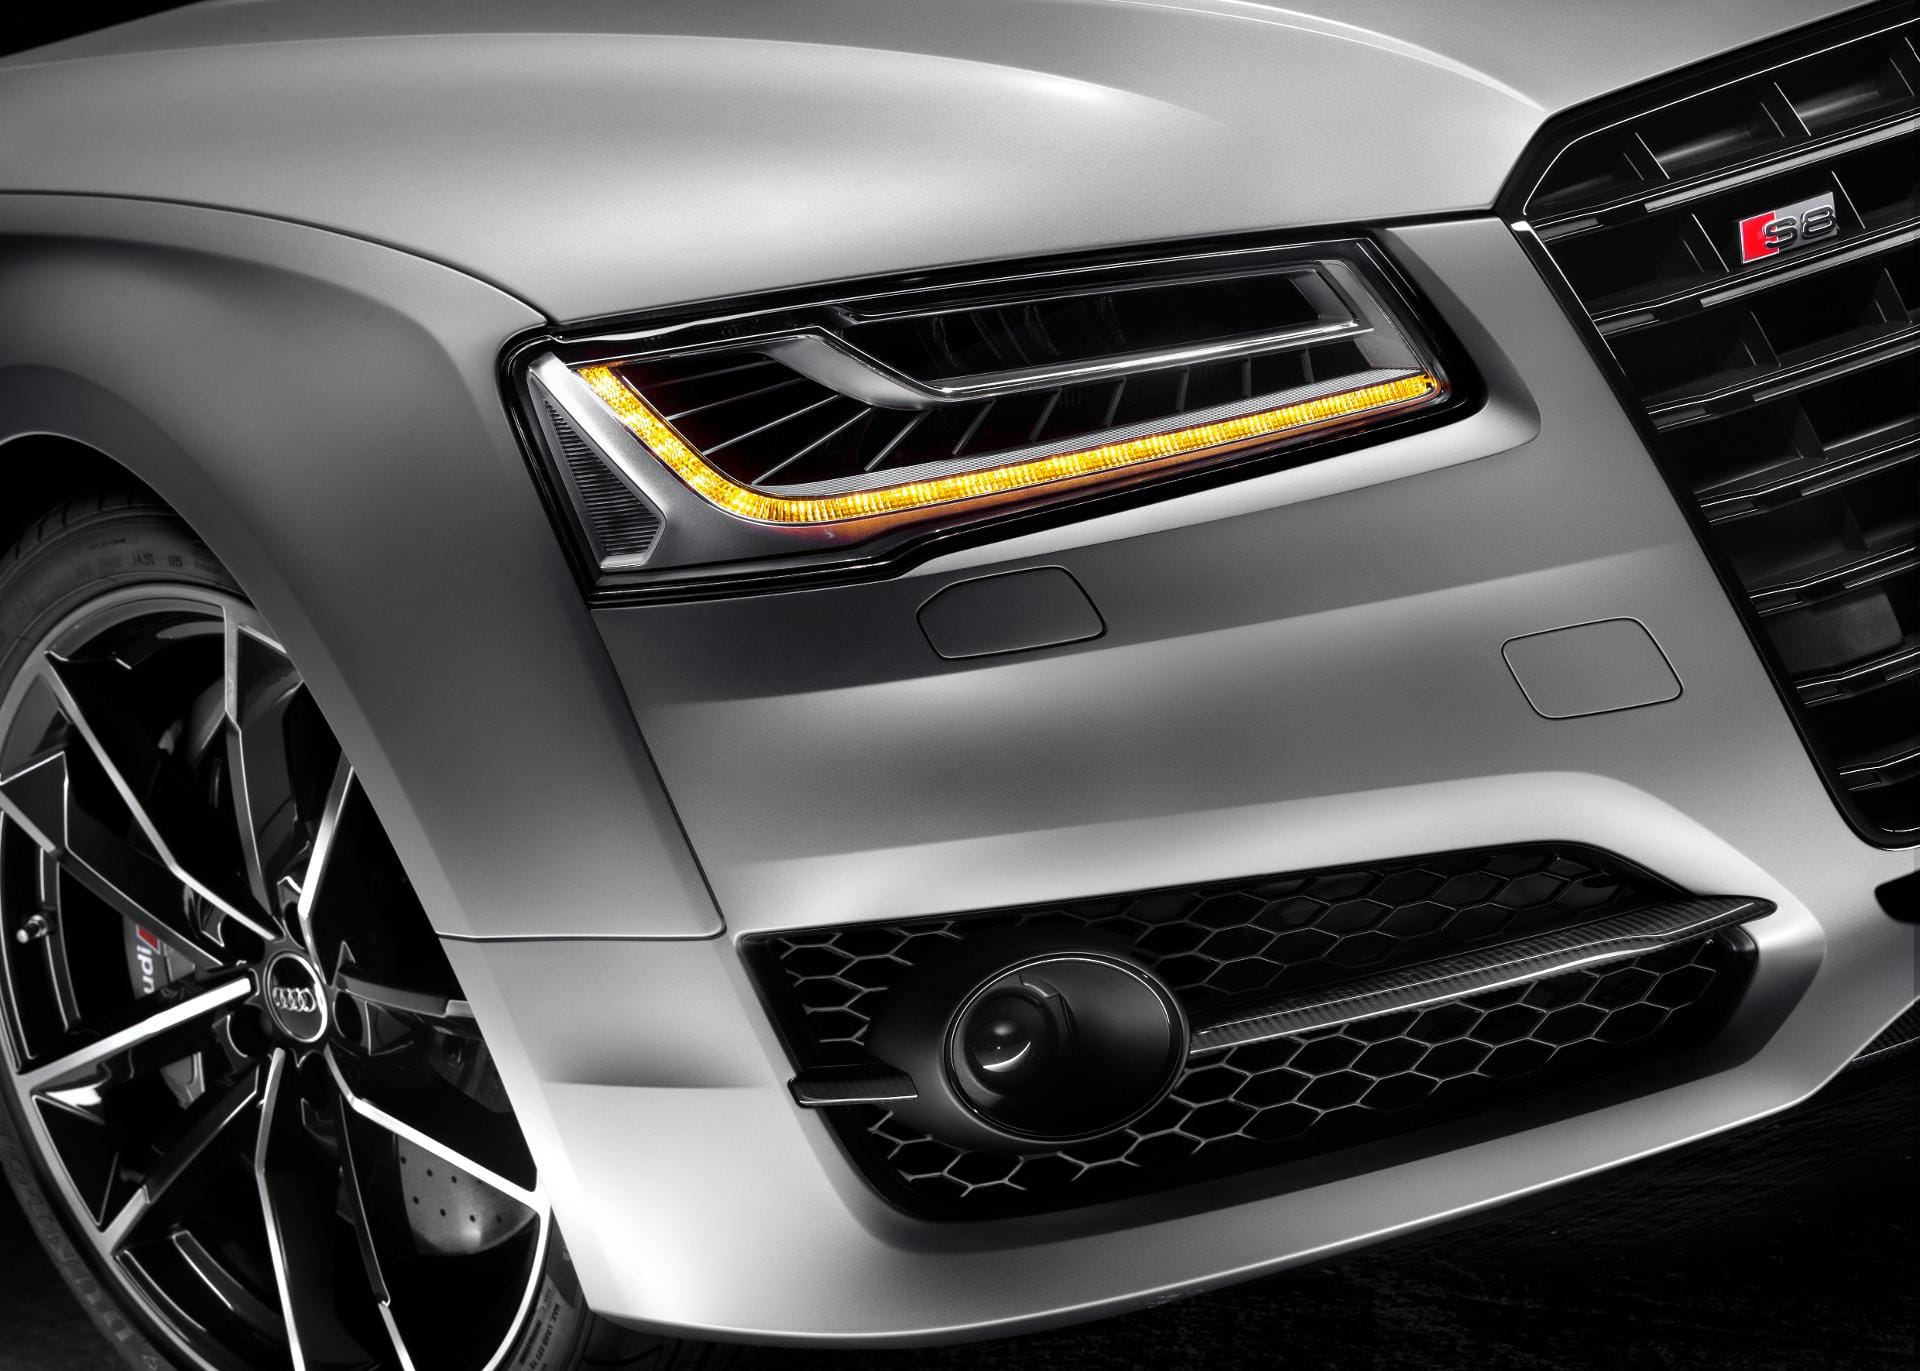 Der Audi ist in der Exklusivfarbe "Florettsilber matt" lackiert.